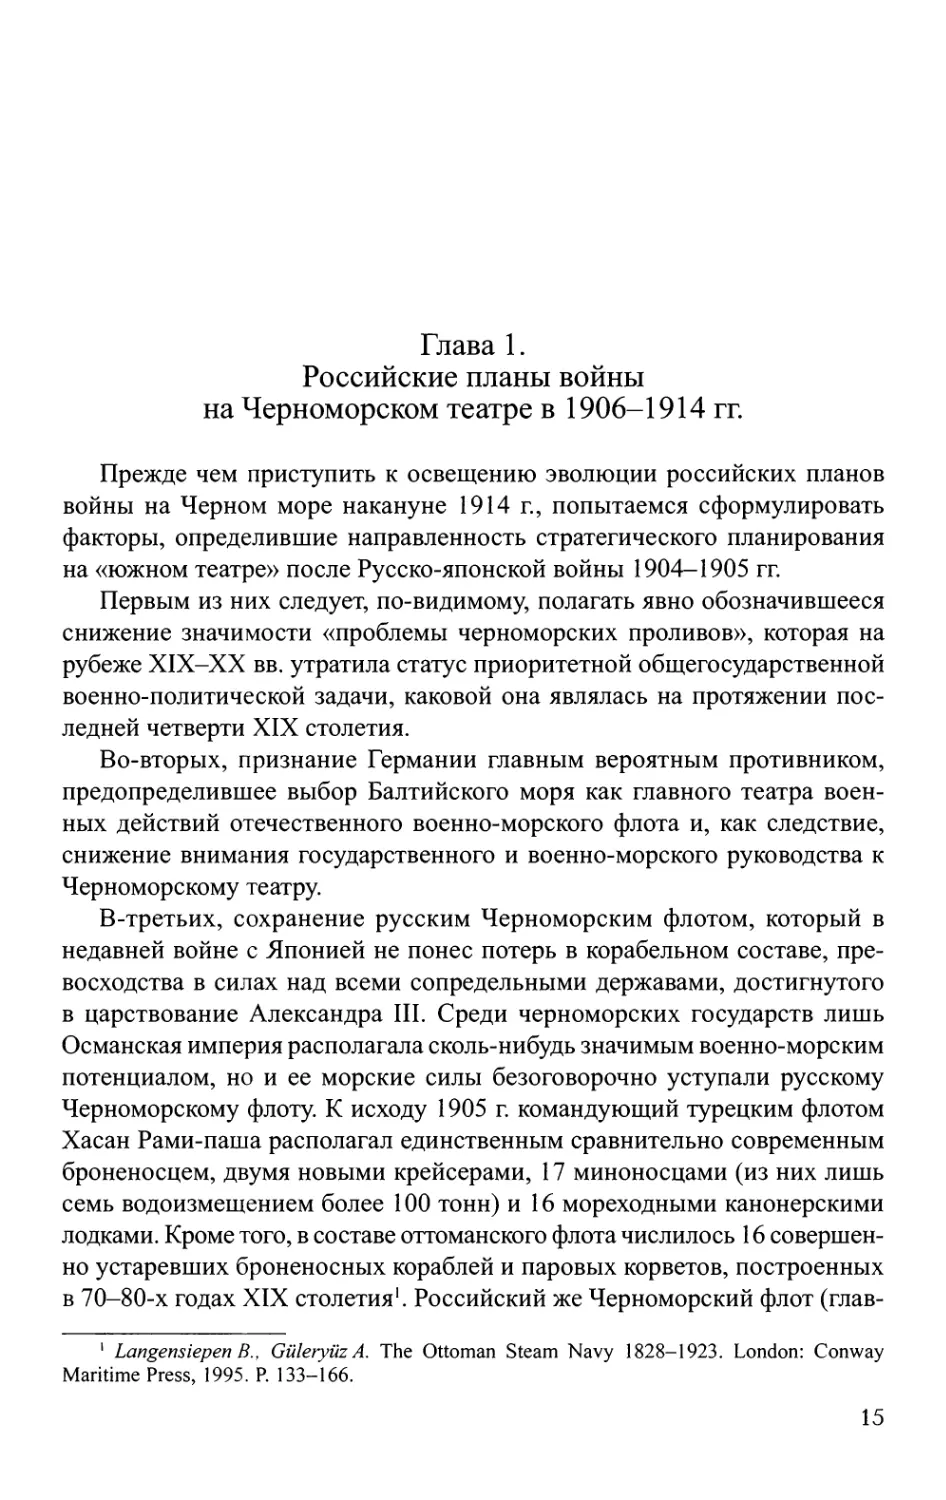 Глава 1. Российские планы войны на Черноморском театре в 1906-1914 гг.